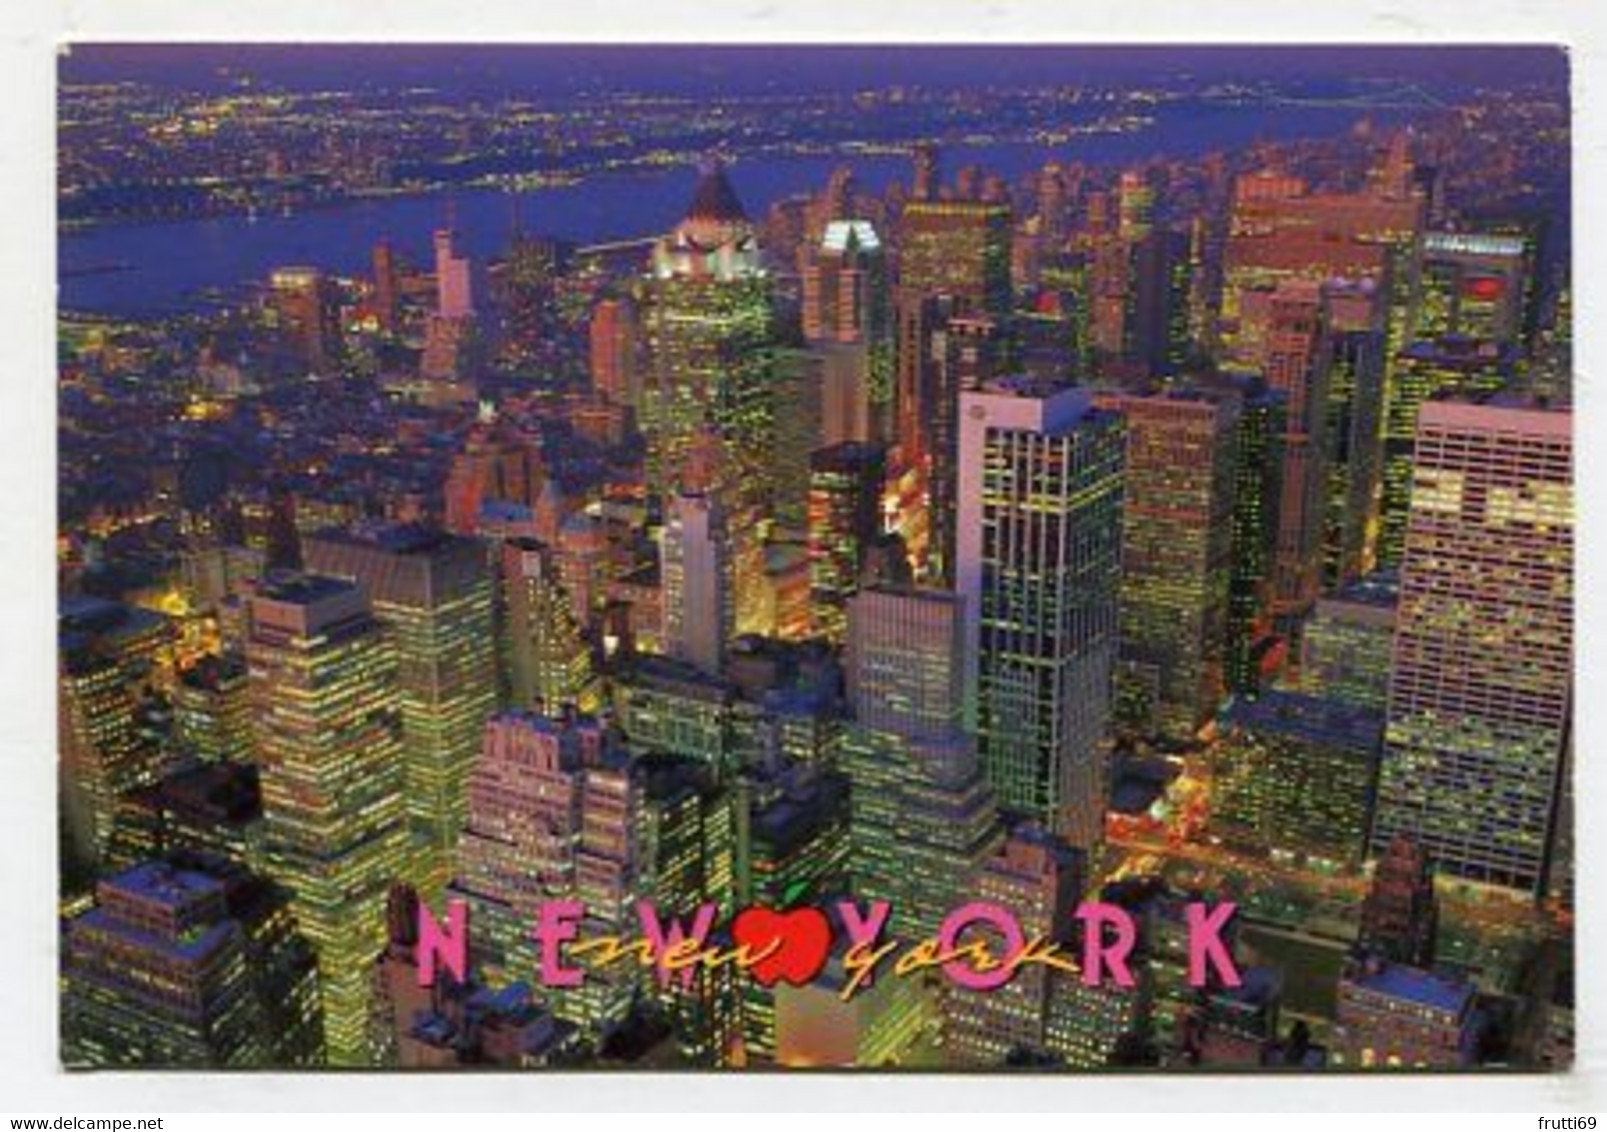 AK 017153 USA - New York City - Panoramic Views